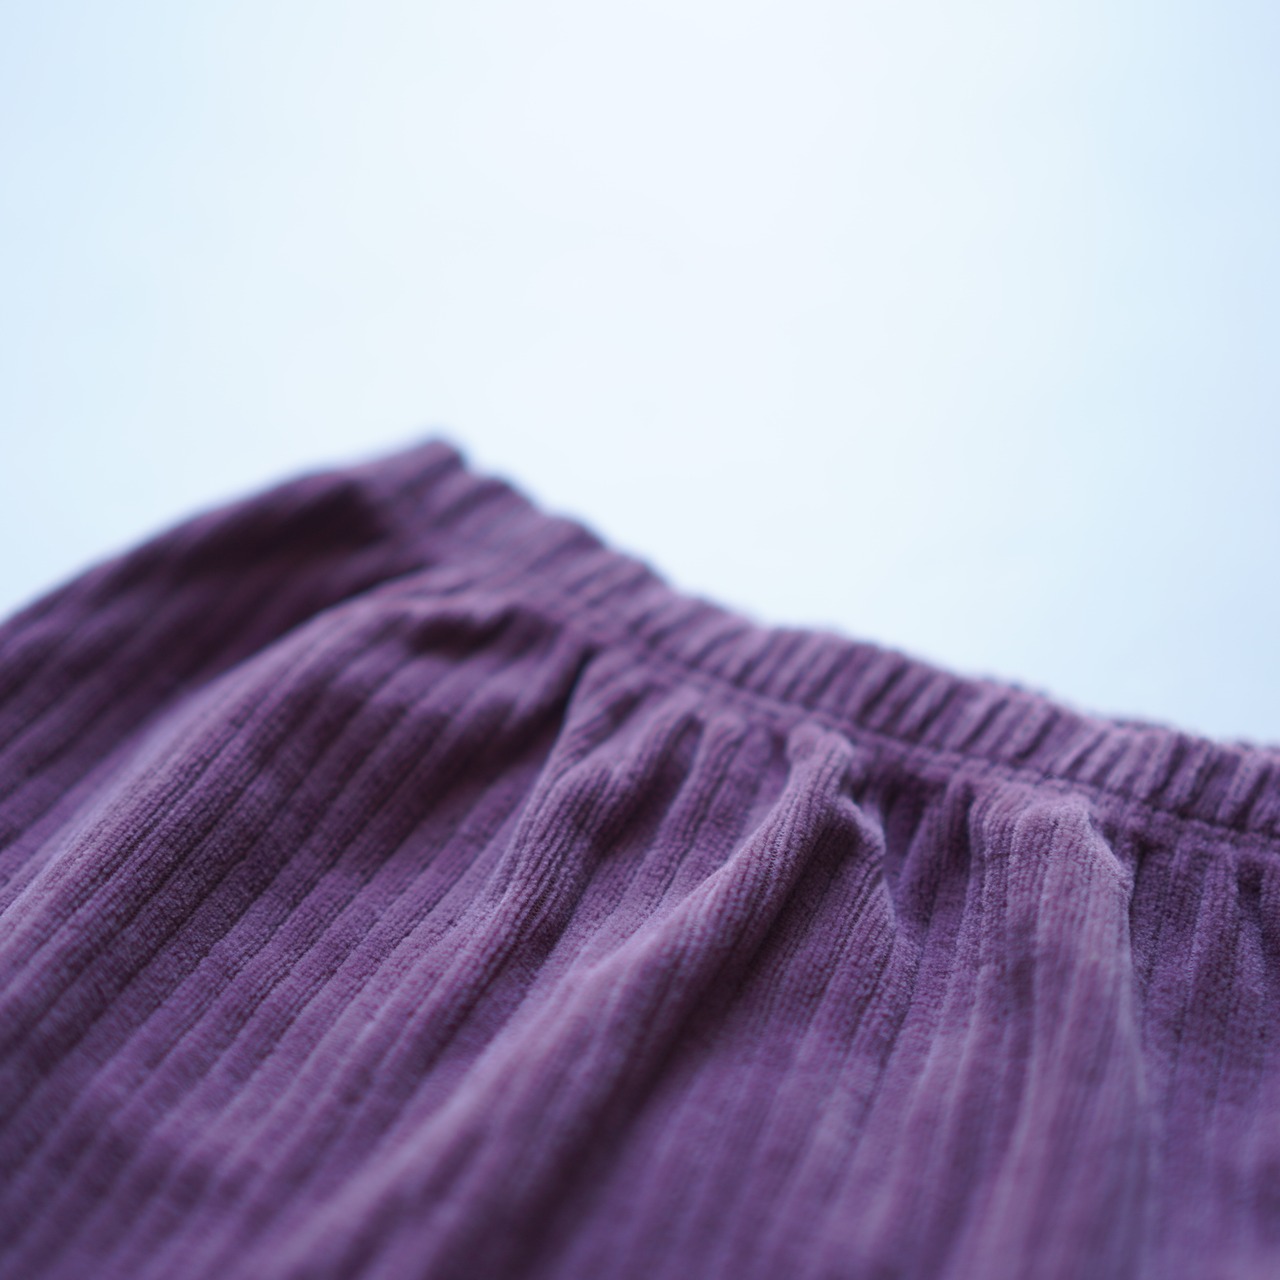 〈 GOLD 23AW 〉Trousers in knitted velvet rib / dove / 70〜75cm